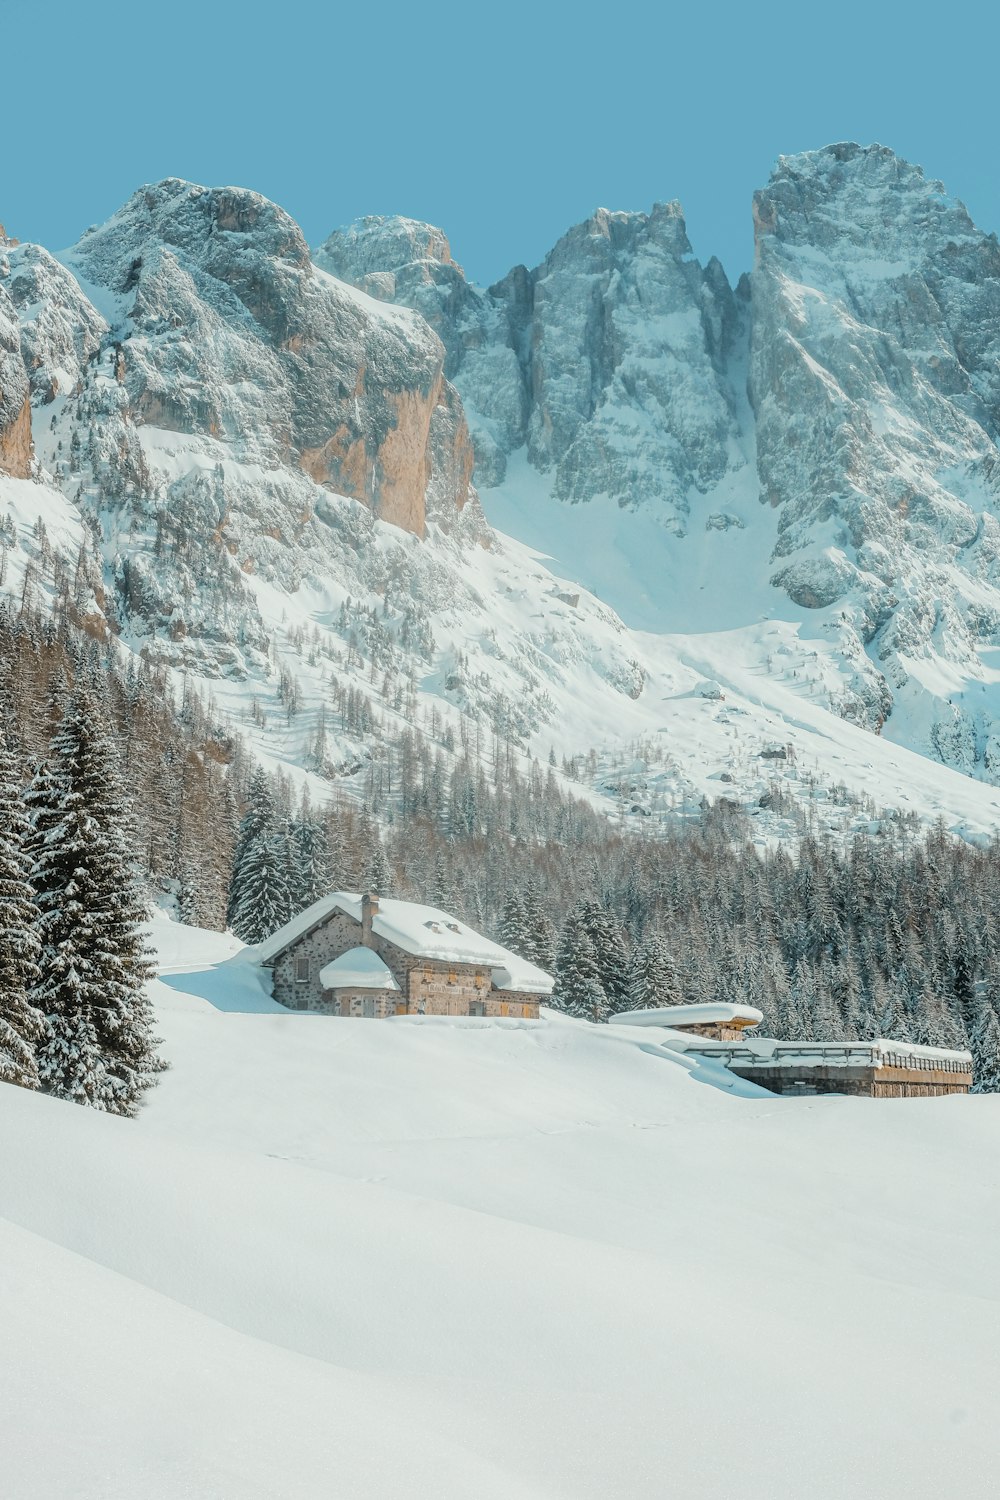 Casa di legno marrone su terreno innevato vicino alla montagna coperta di neve durante il giorno